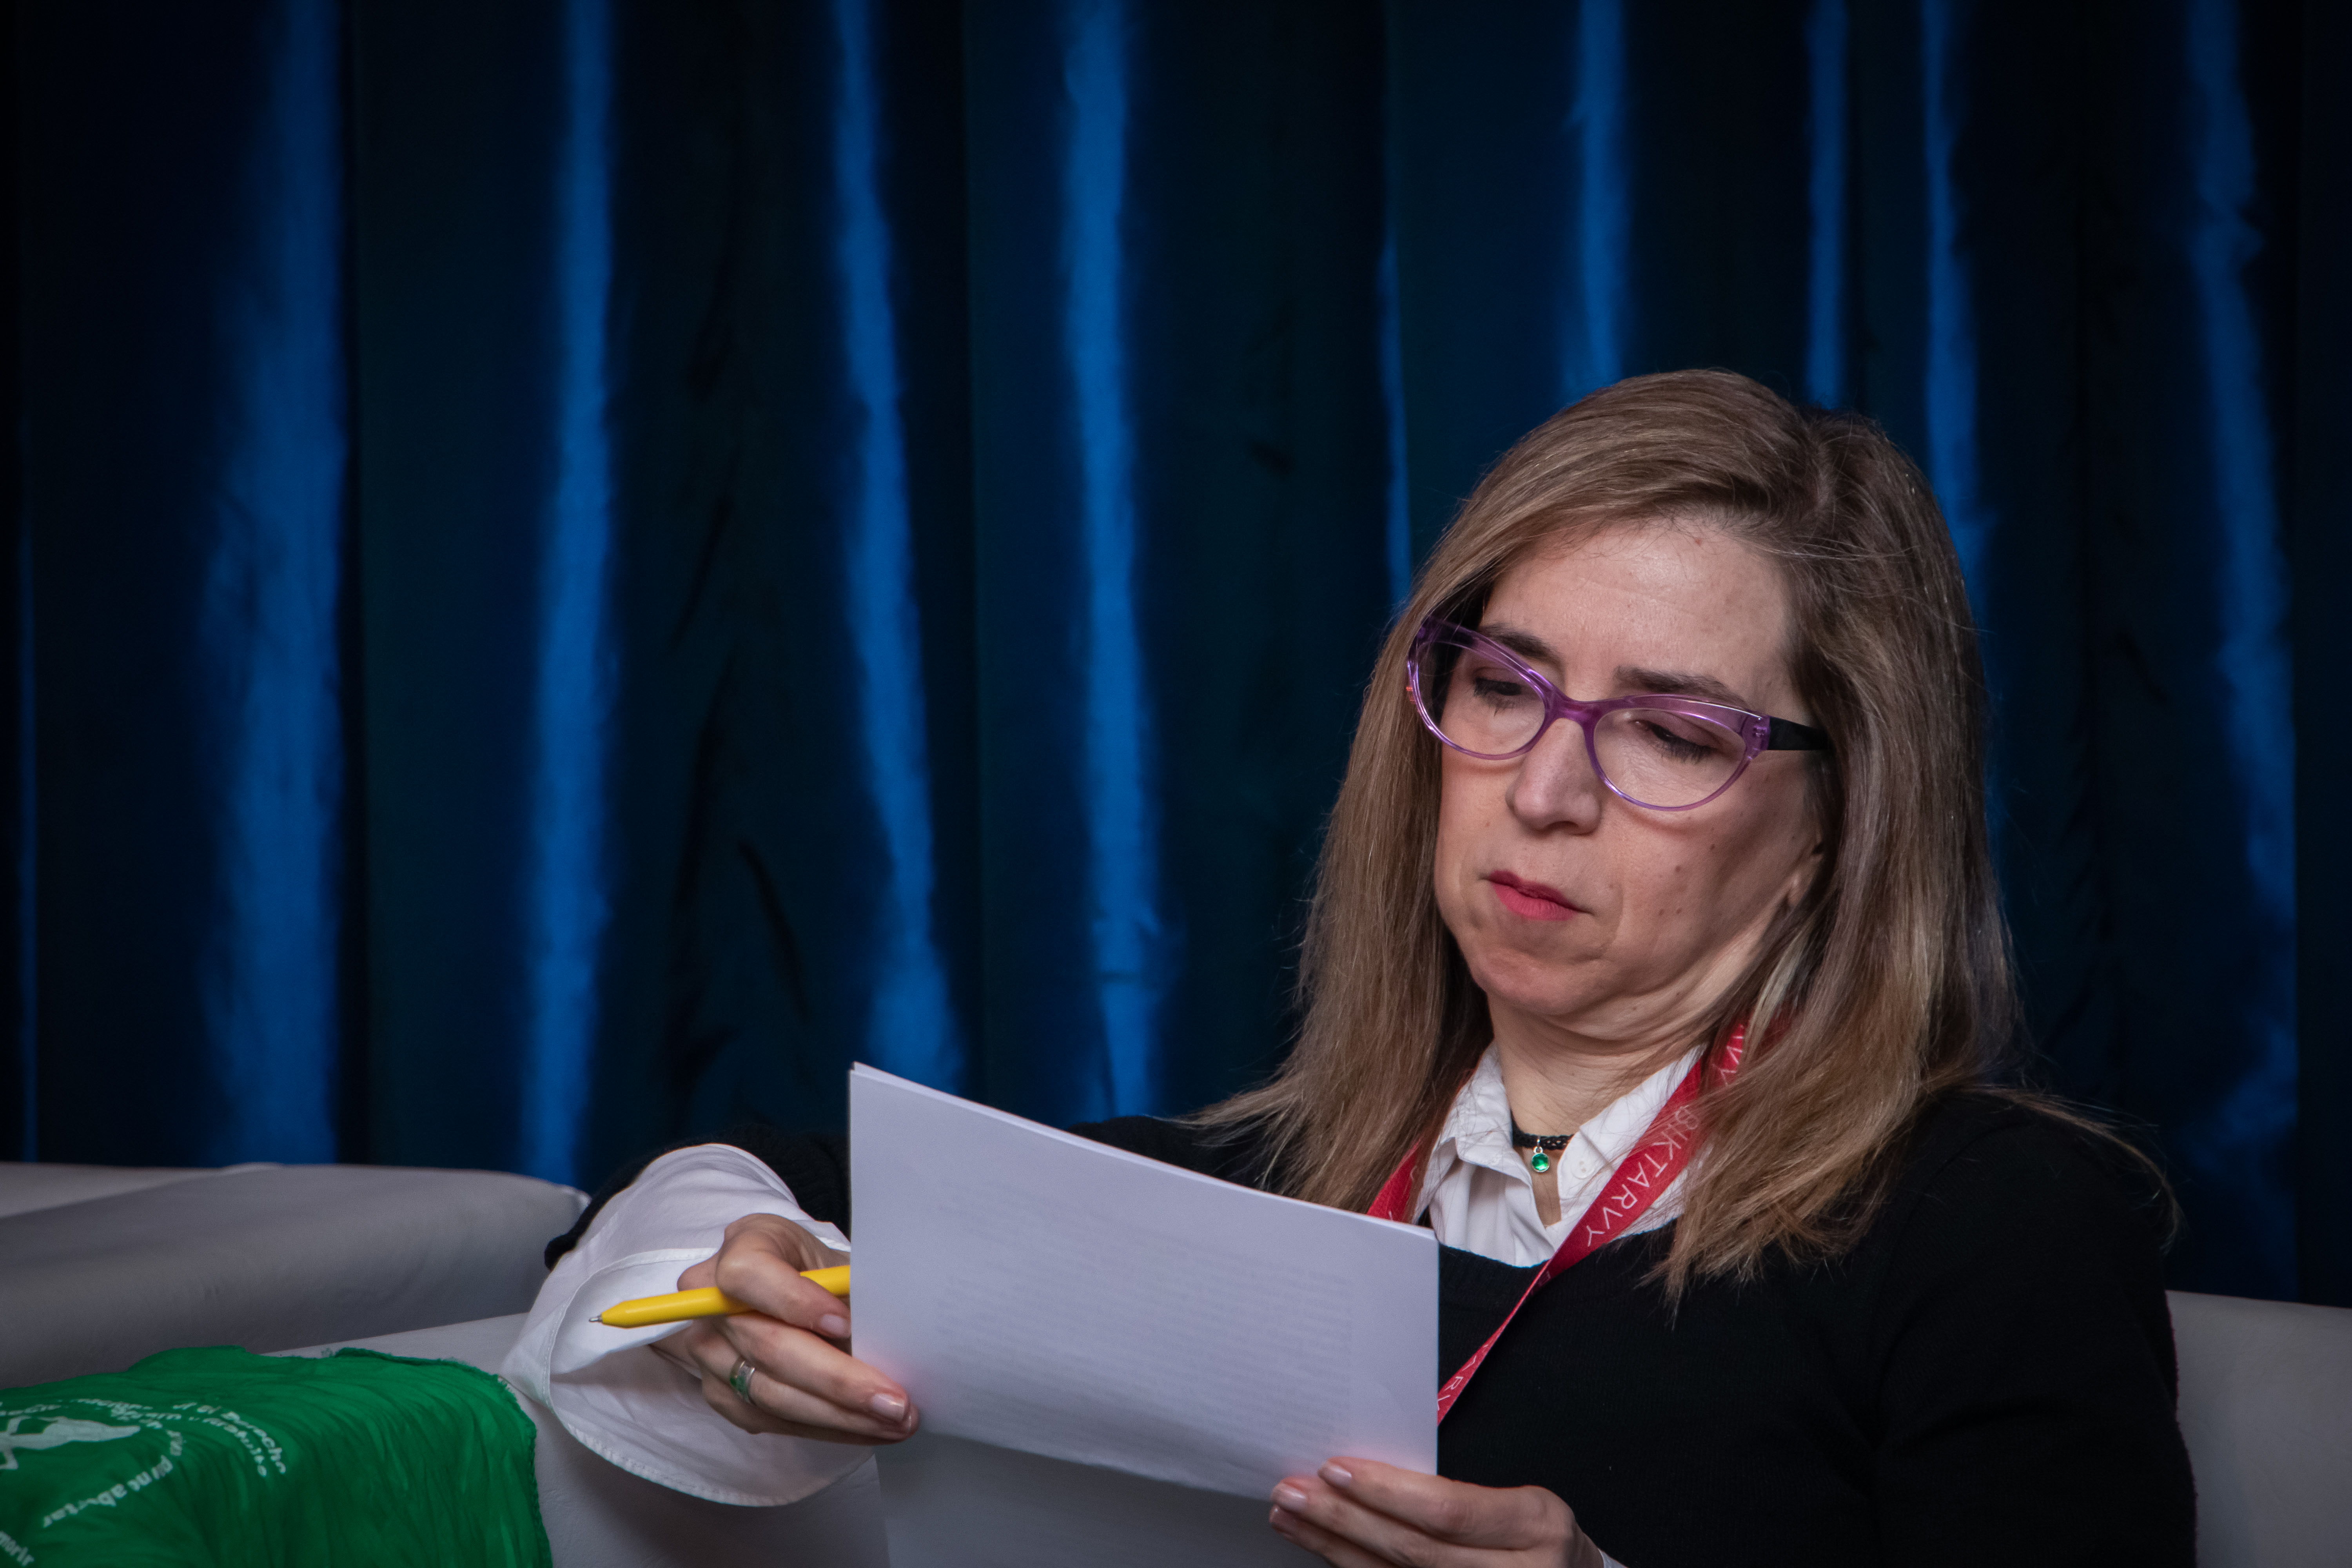 Ingrid Beck en el Simposio Científico de Fundación Huésped 2019